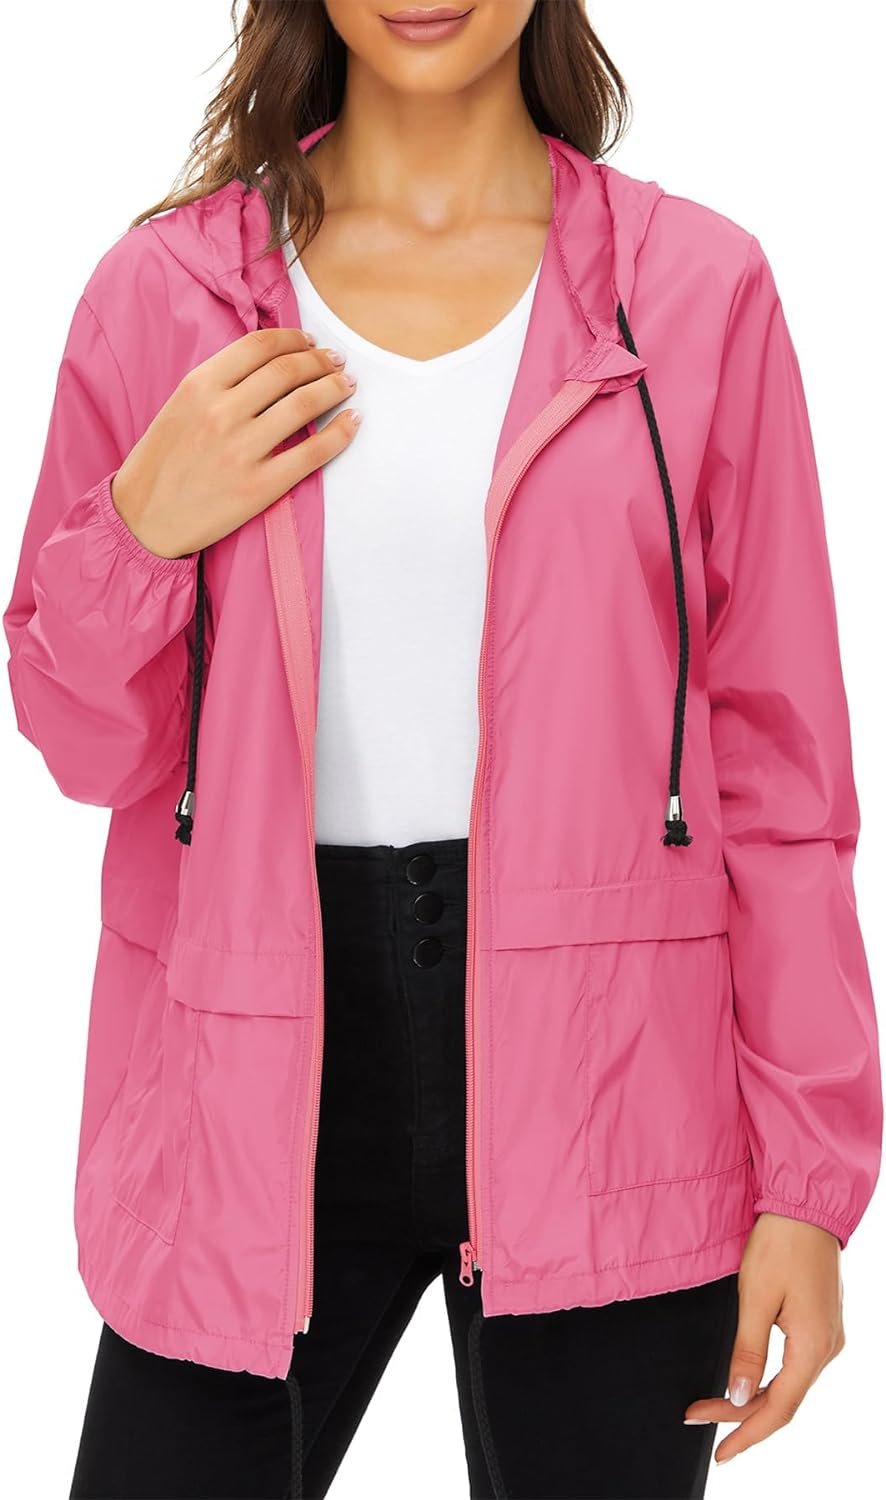 Zando Lightweight Rain Jacket Women Raincoat for Women Packable Rain Coat Windbreaker Rain Jackets Waterproof with Hood